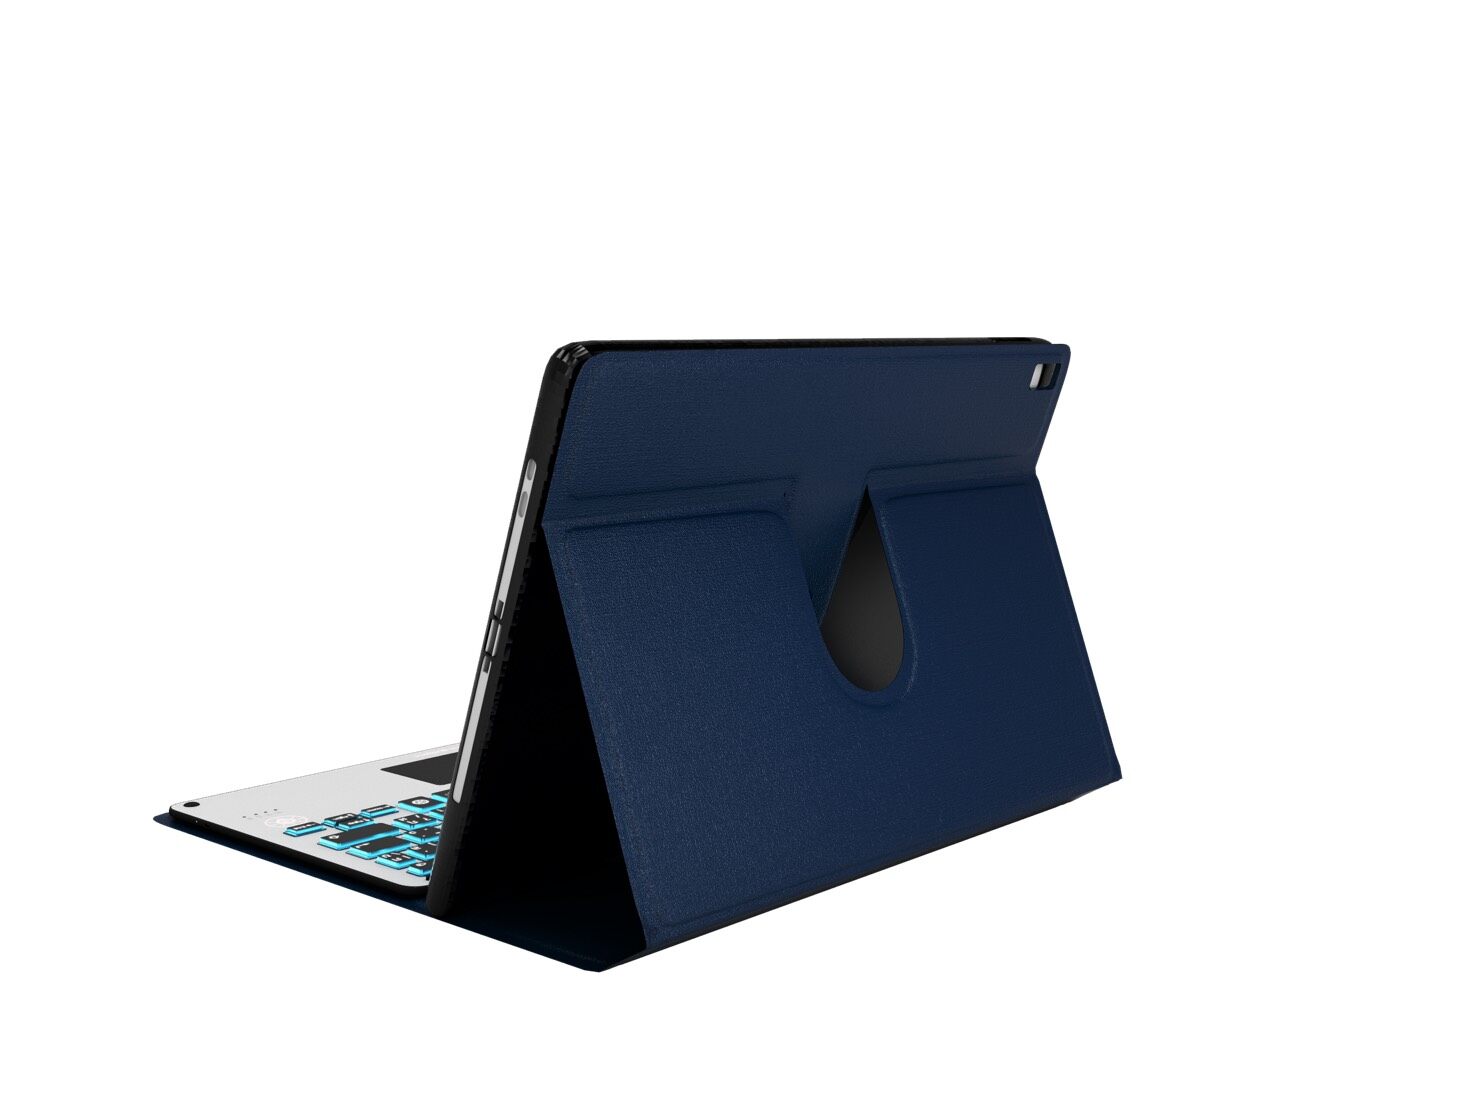 Genius Rotated Case "MAX series II" เคสปรับหมุนได้สำหรับ iPad  เคสหมุนสำหรับเก็บคีย์บอร์ด  **ราคานี้ไม่รวมคีย์บอร์ด**